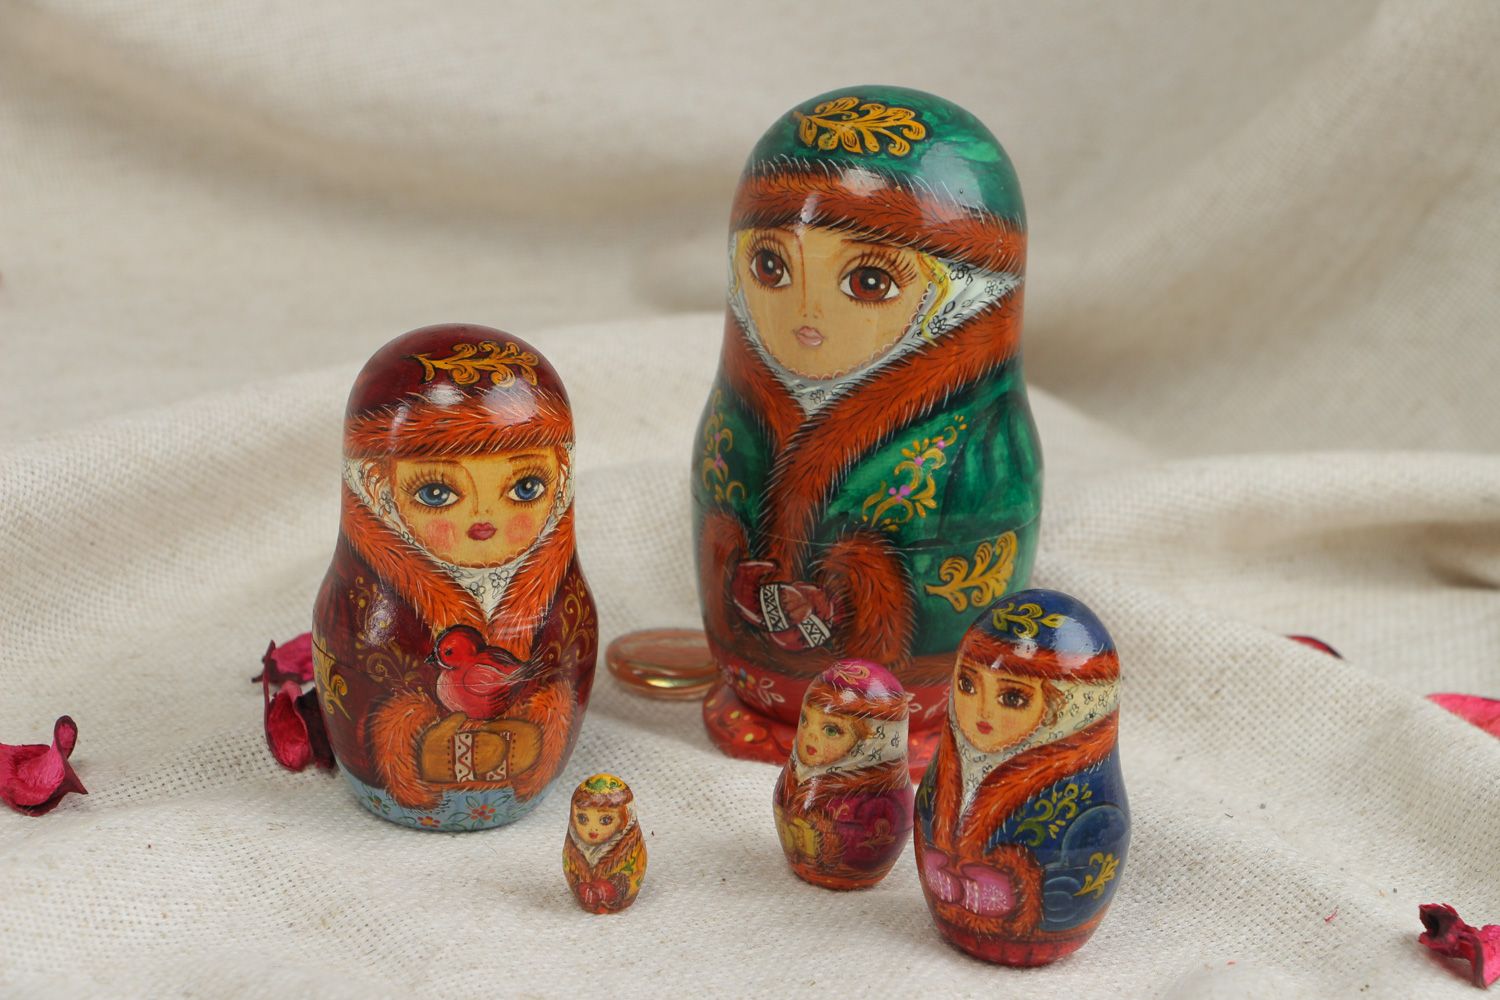 Jolie poupée russe de bois naturel faite main 5 poupées ethniques avec peinture photo 5